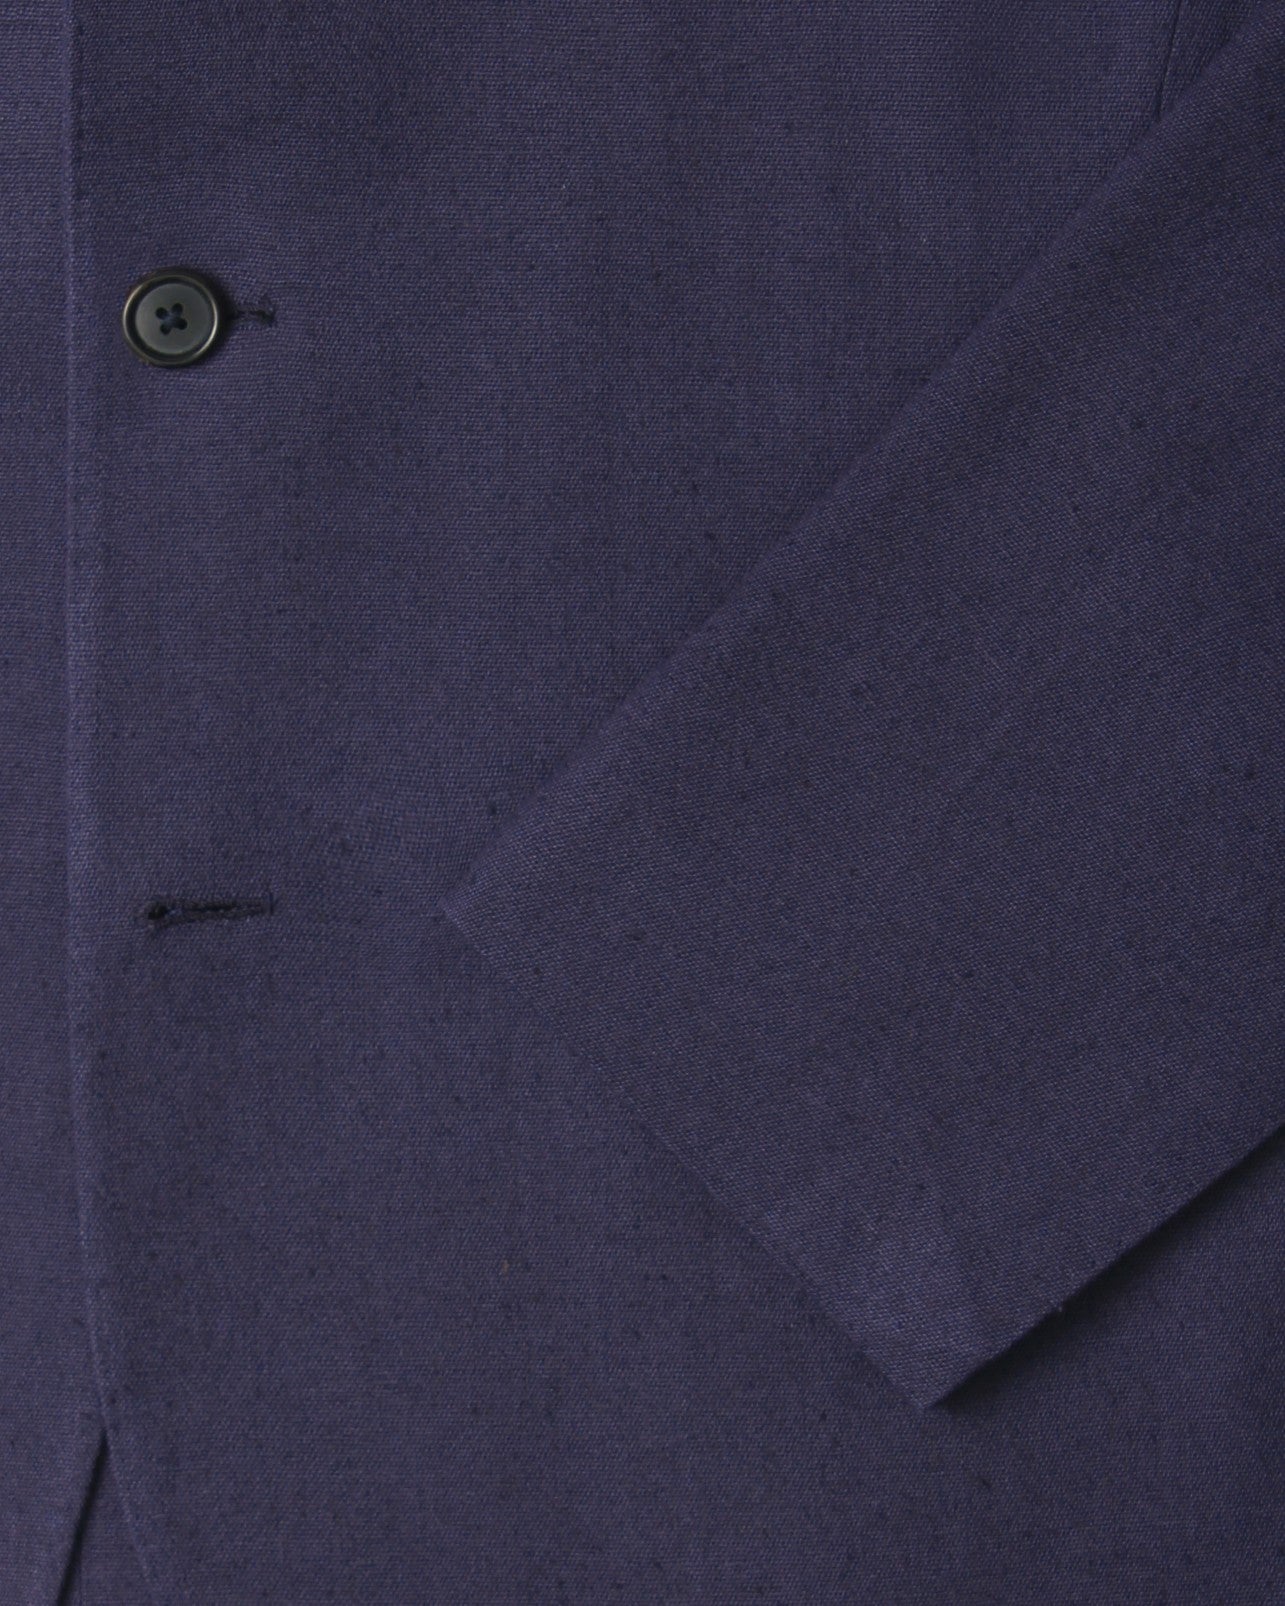 Indigo Blue Silk Sport Coat with horn buttons